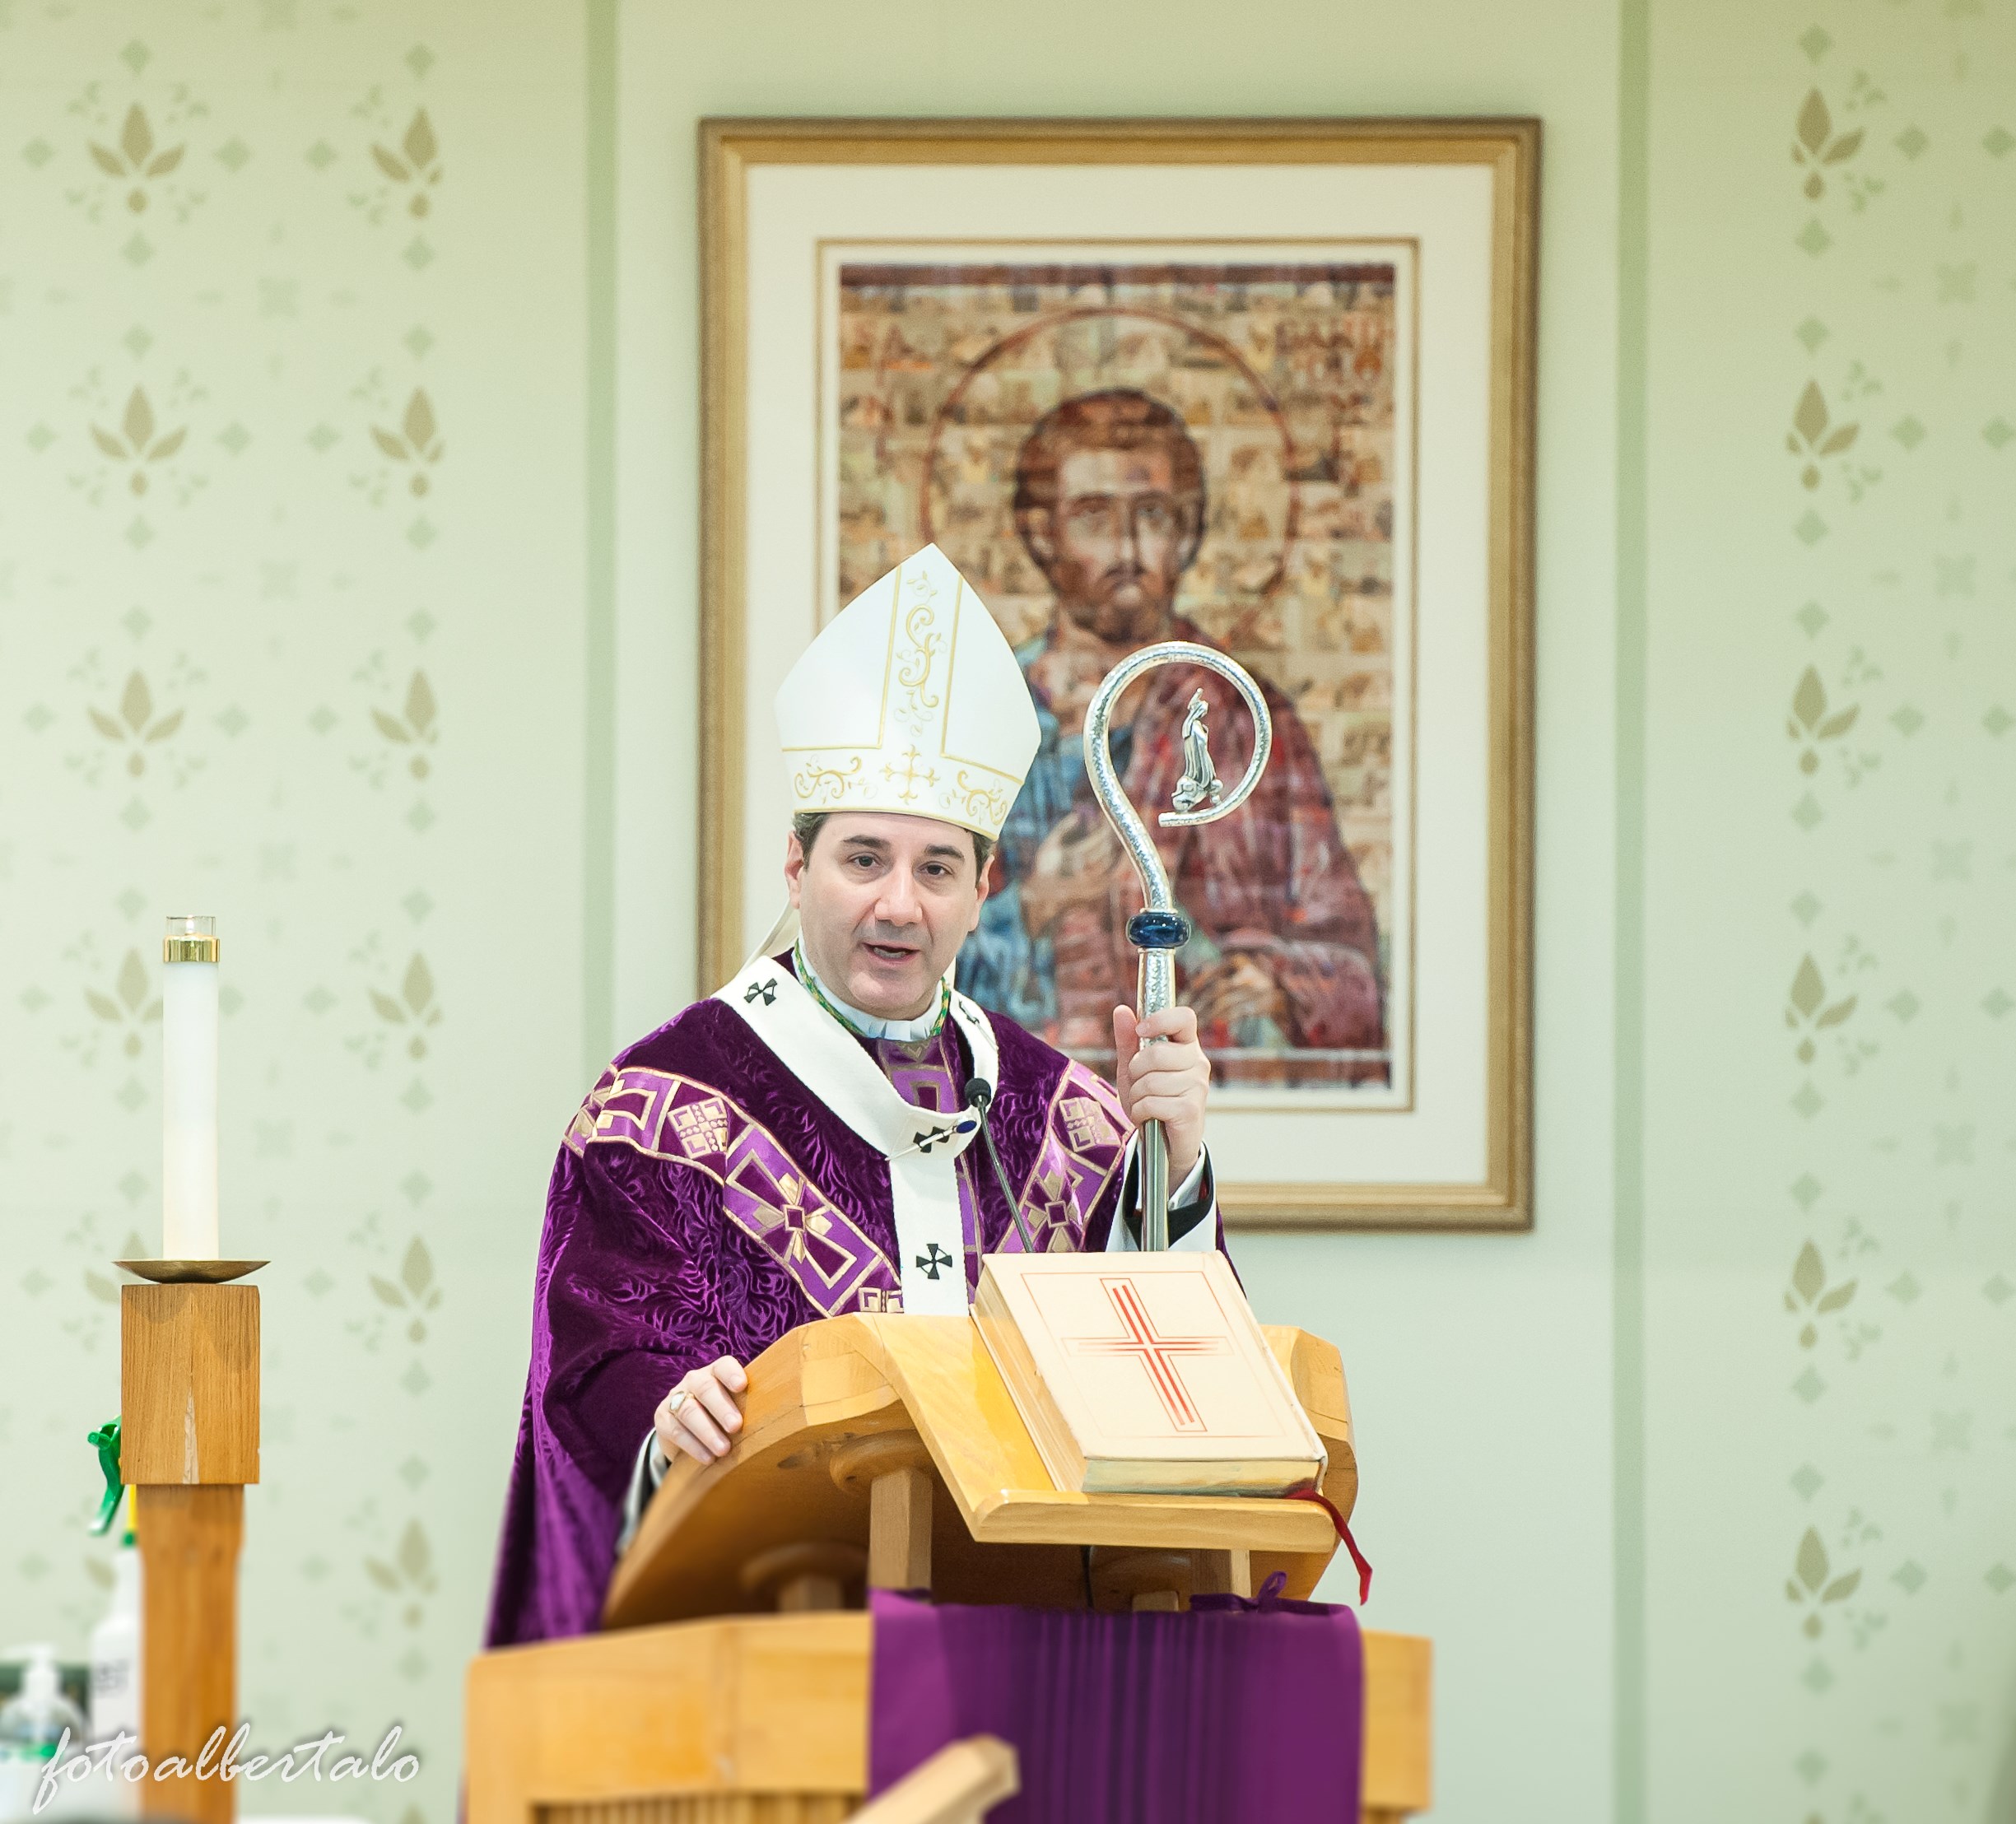 Archbishop Francis Leo celebrating Mass at St. Bartholomew parish